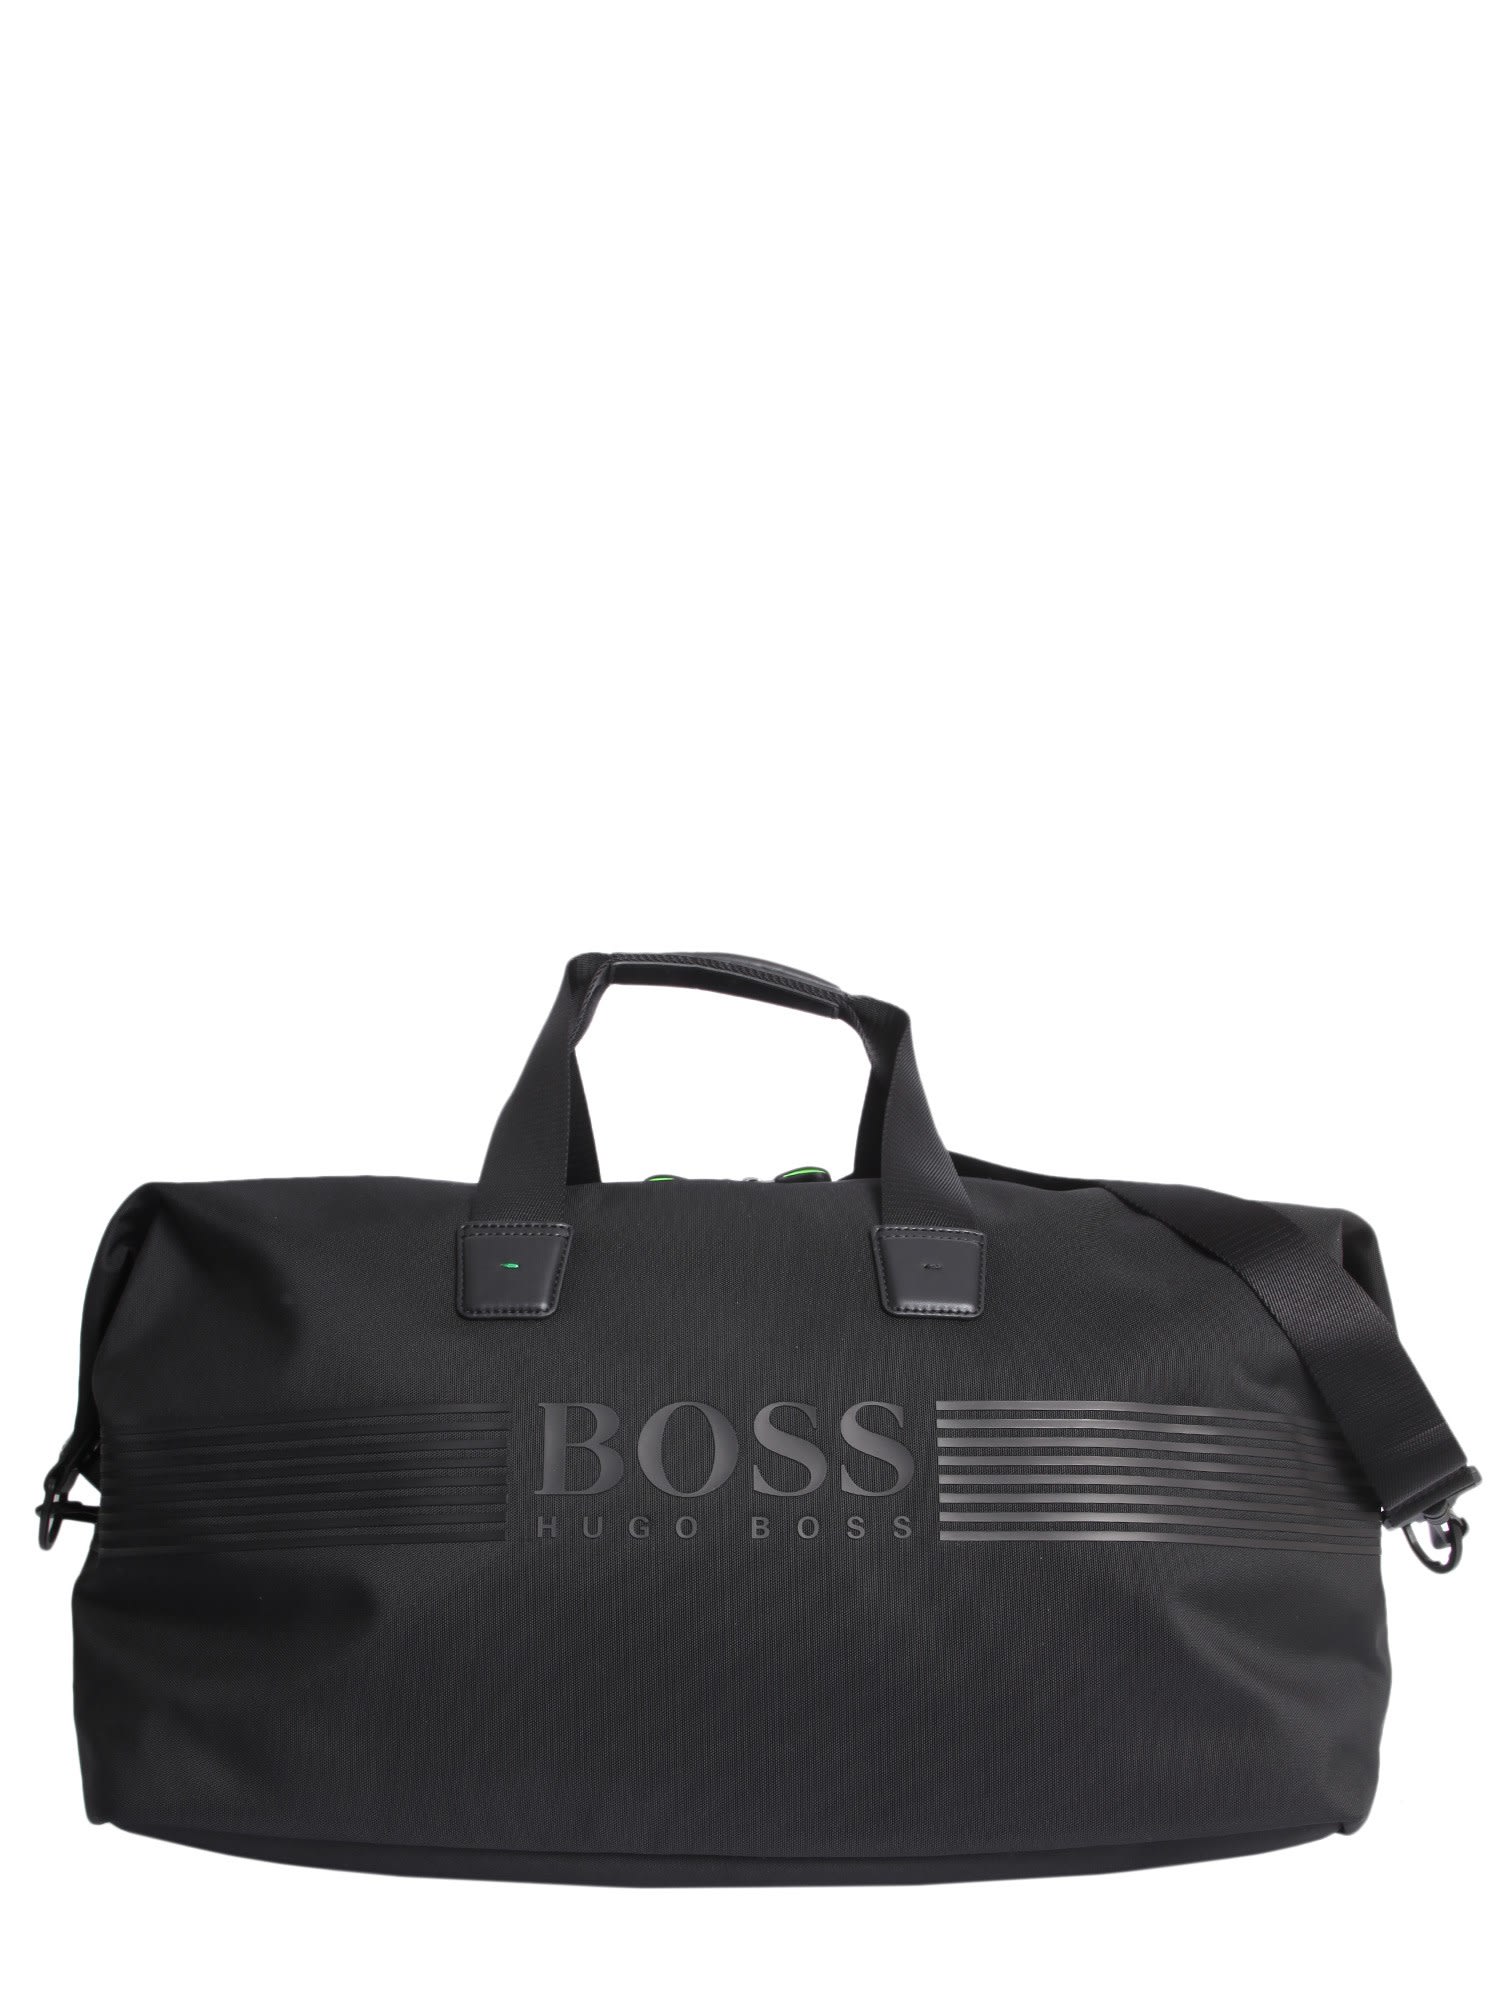 hugo boss traveller bag